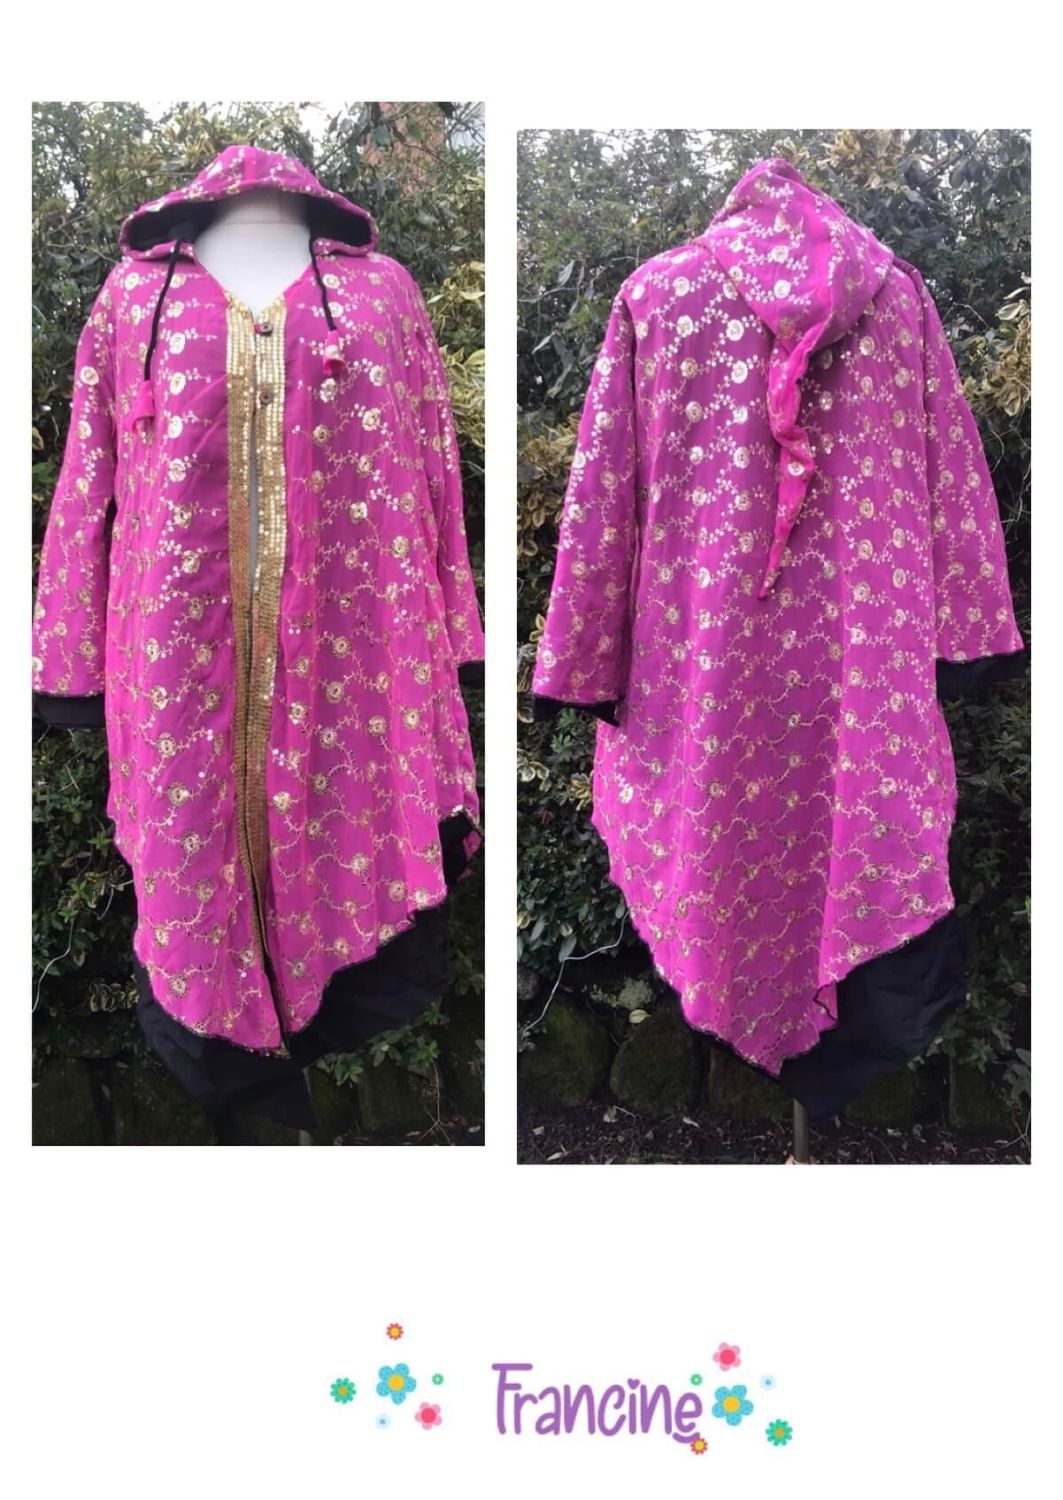 Louanna-Sunshine vintage sari pixie hood jacket